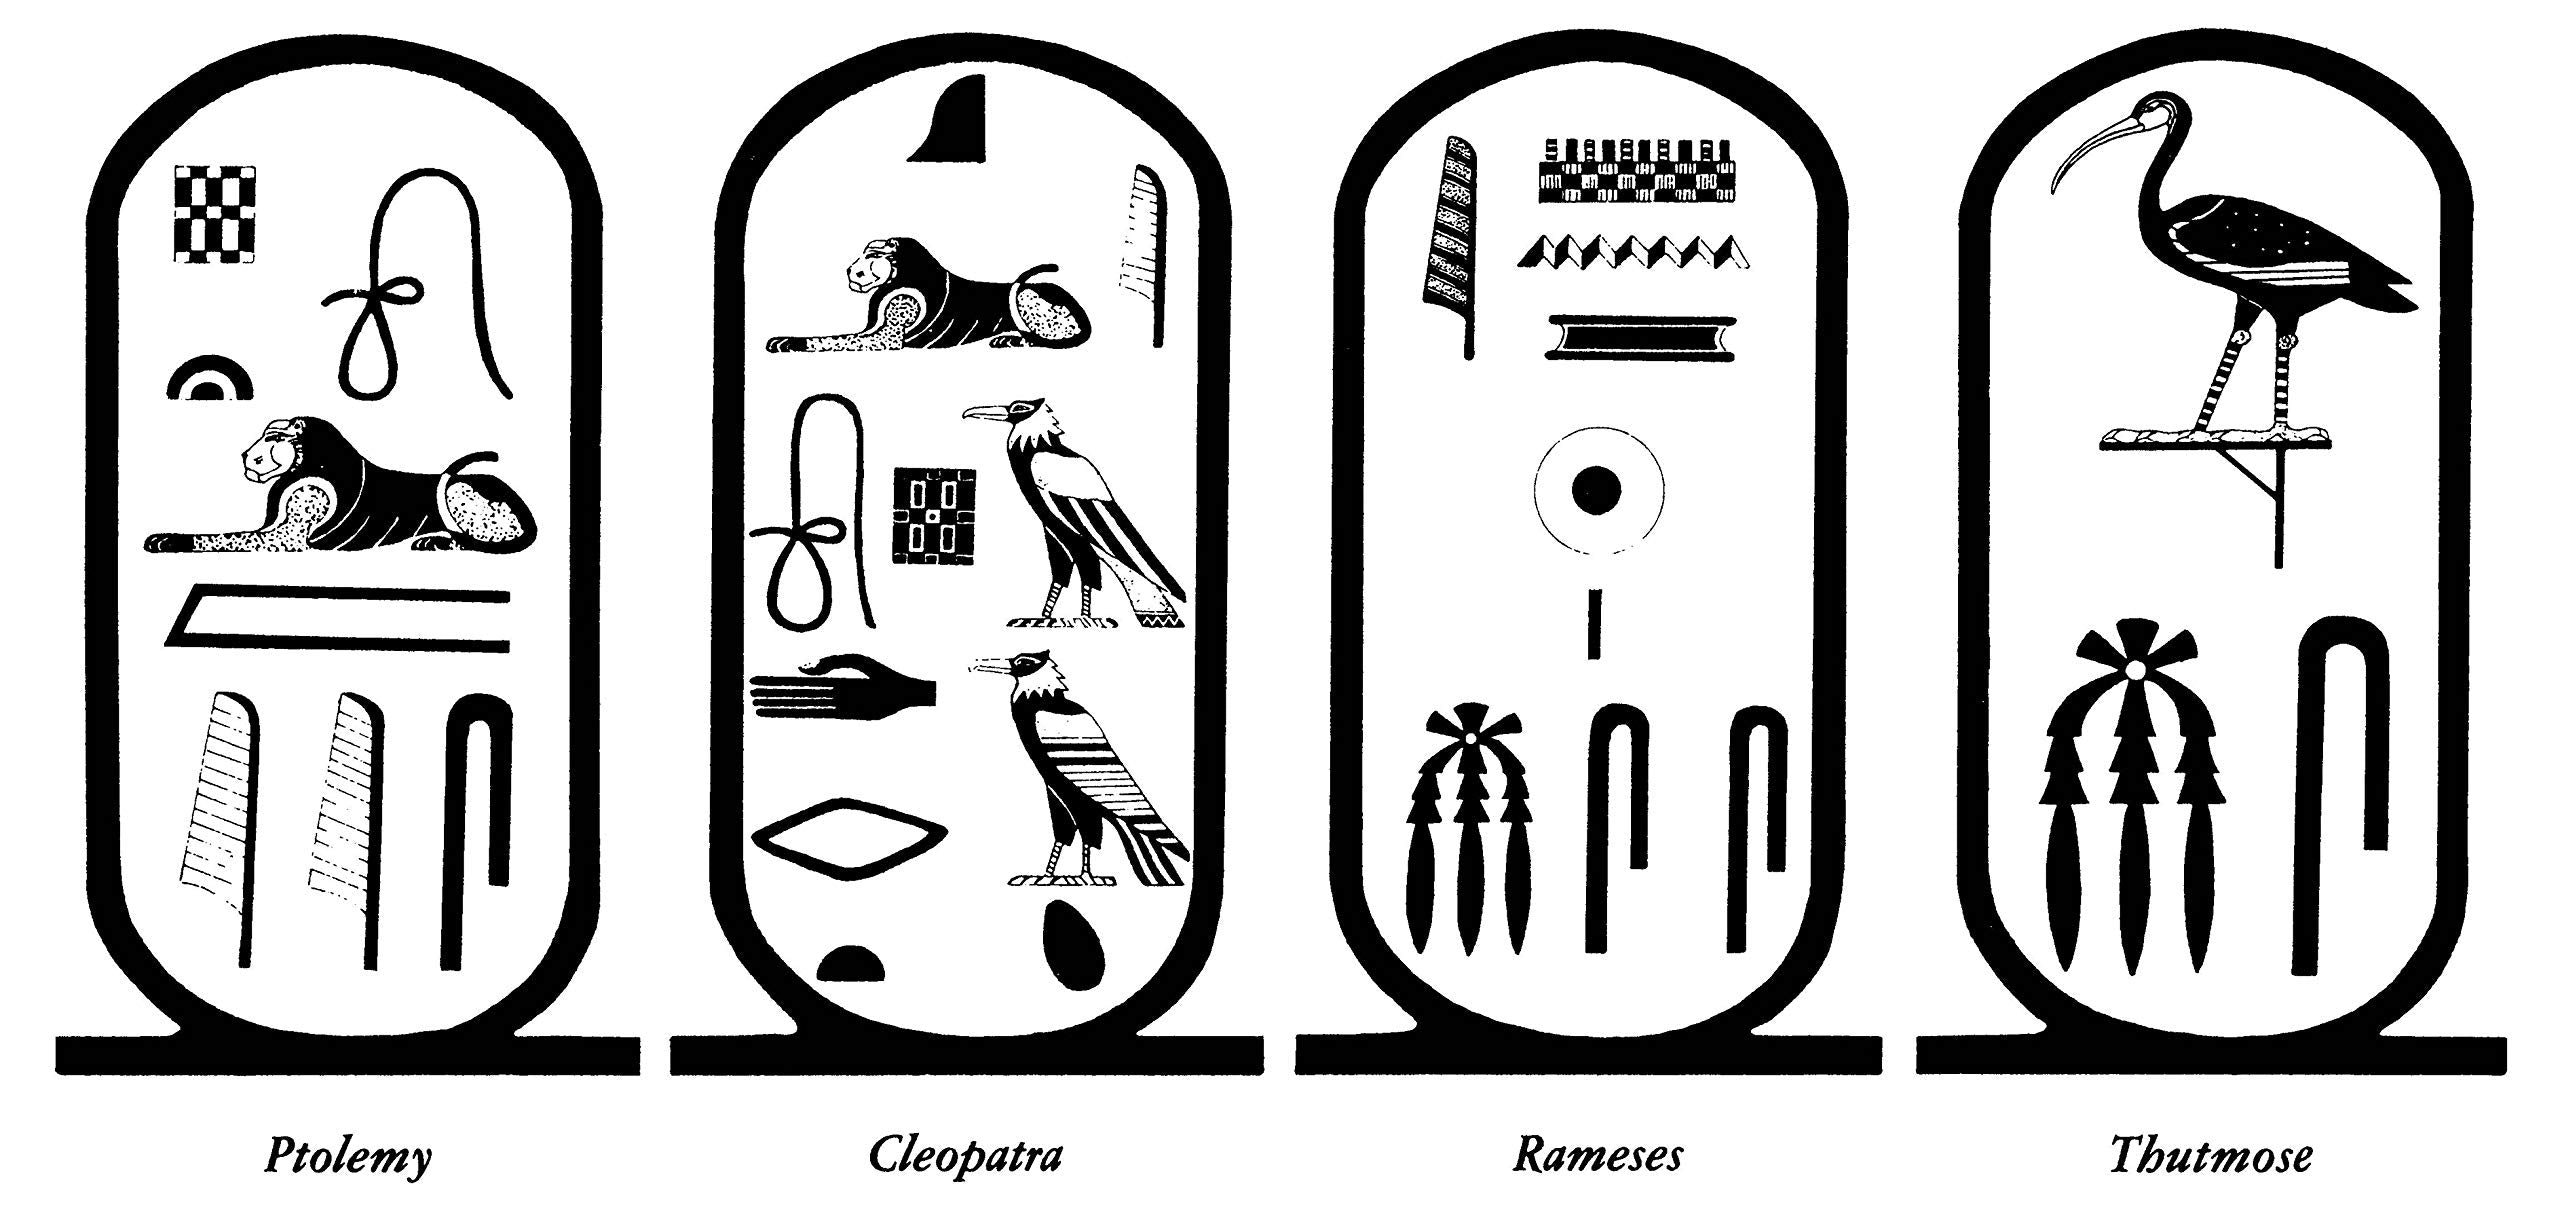 Egyptian Hieroglyphics: How to Read